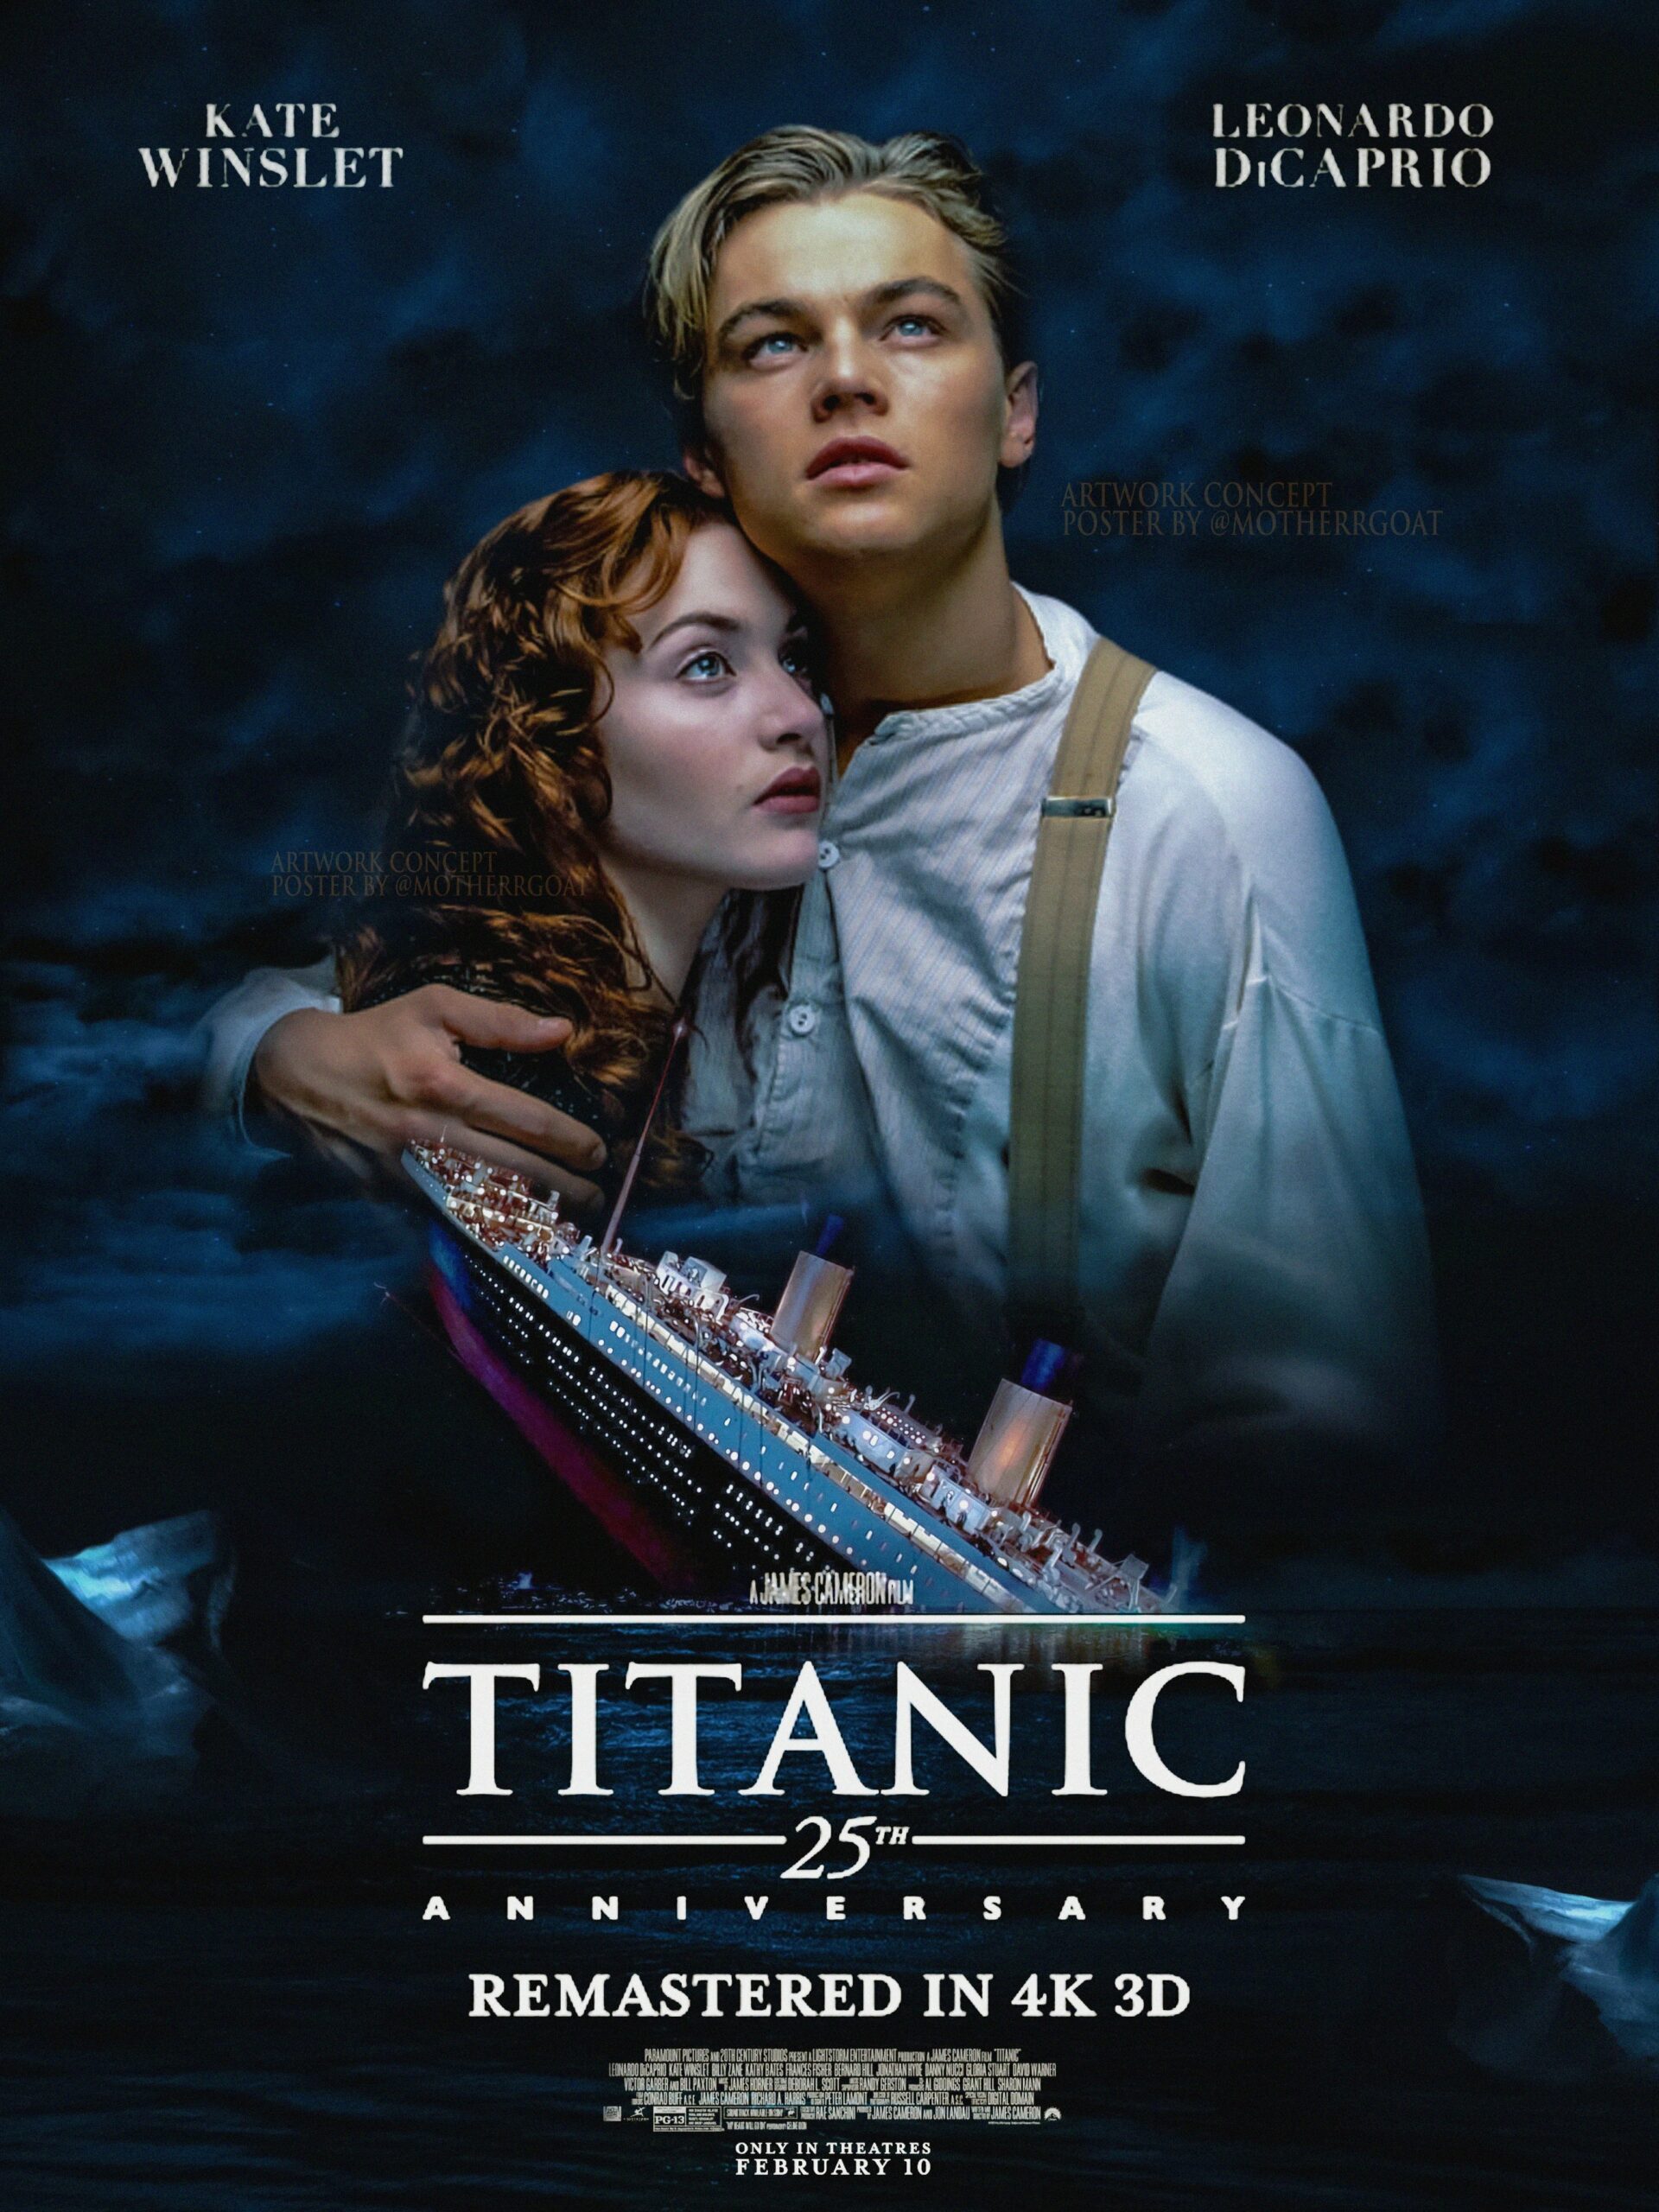 ACONTECE Titanic retorna aos cinemas em grande estilo